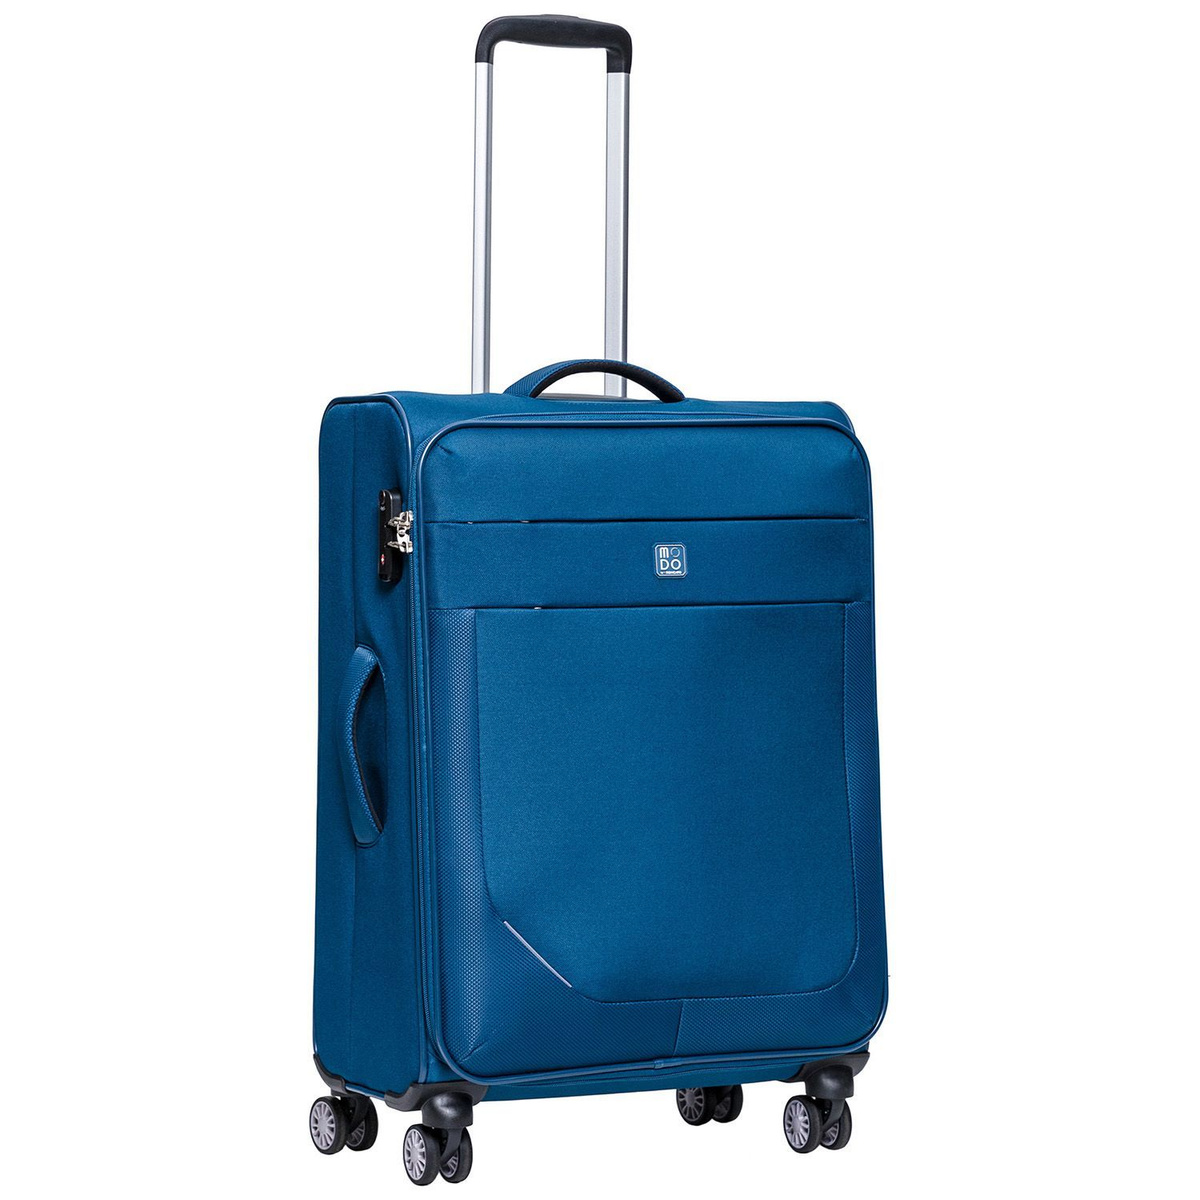 Размер чемодана: 44x67x26 см Вес чемодана: 3,2 кг Объём чемодана: 73 л